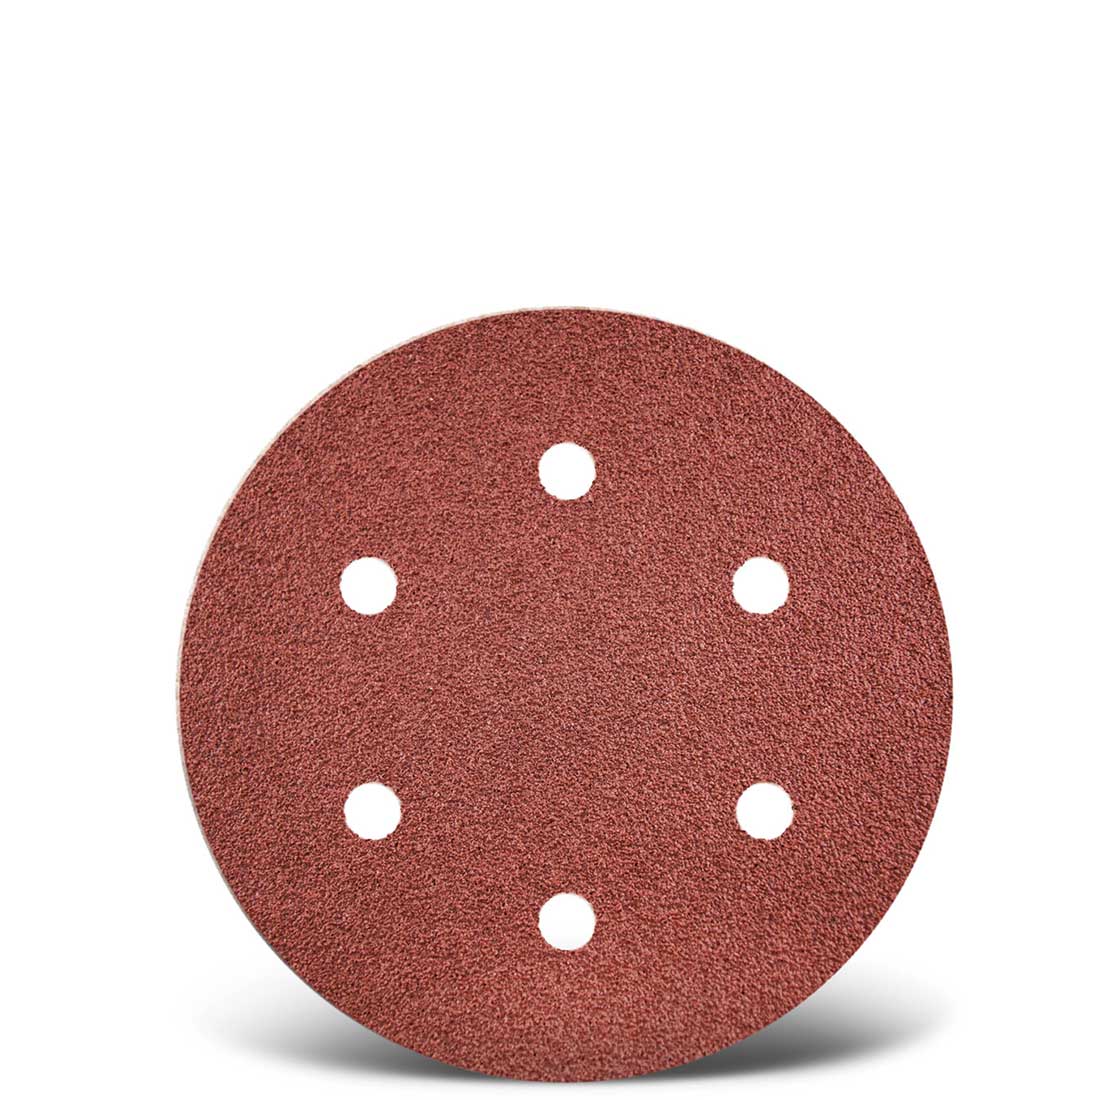 MENZER hook & loop sanding discs for drywall sanders, G16–240, Ø 225 mm / 6 hole / aluminium oxide